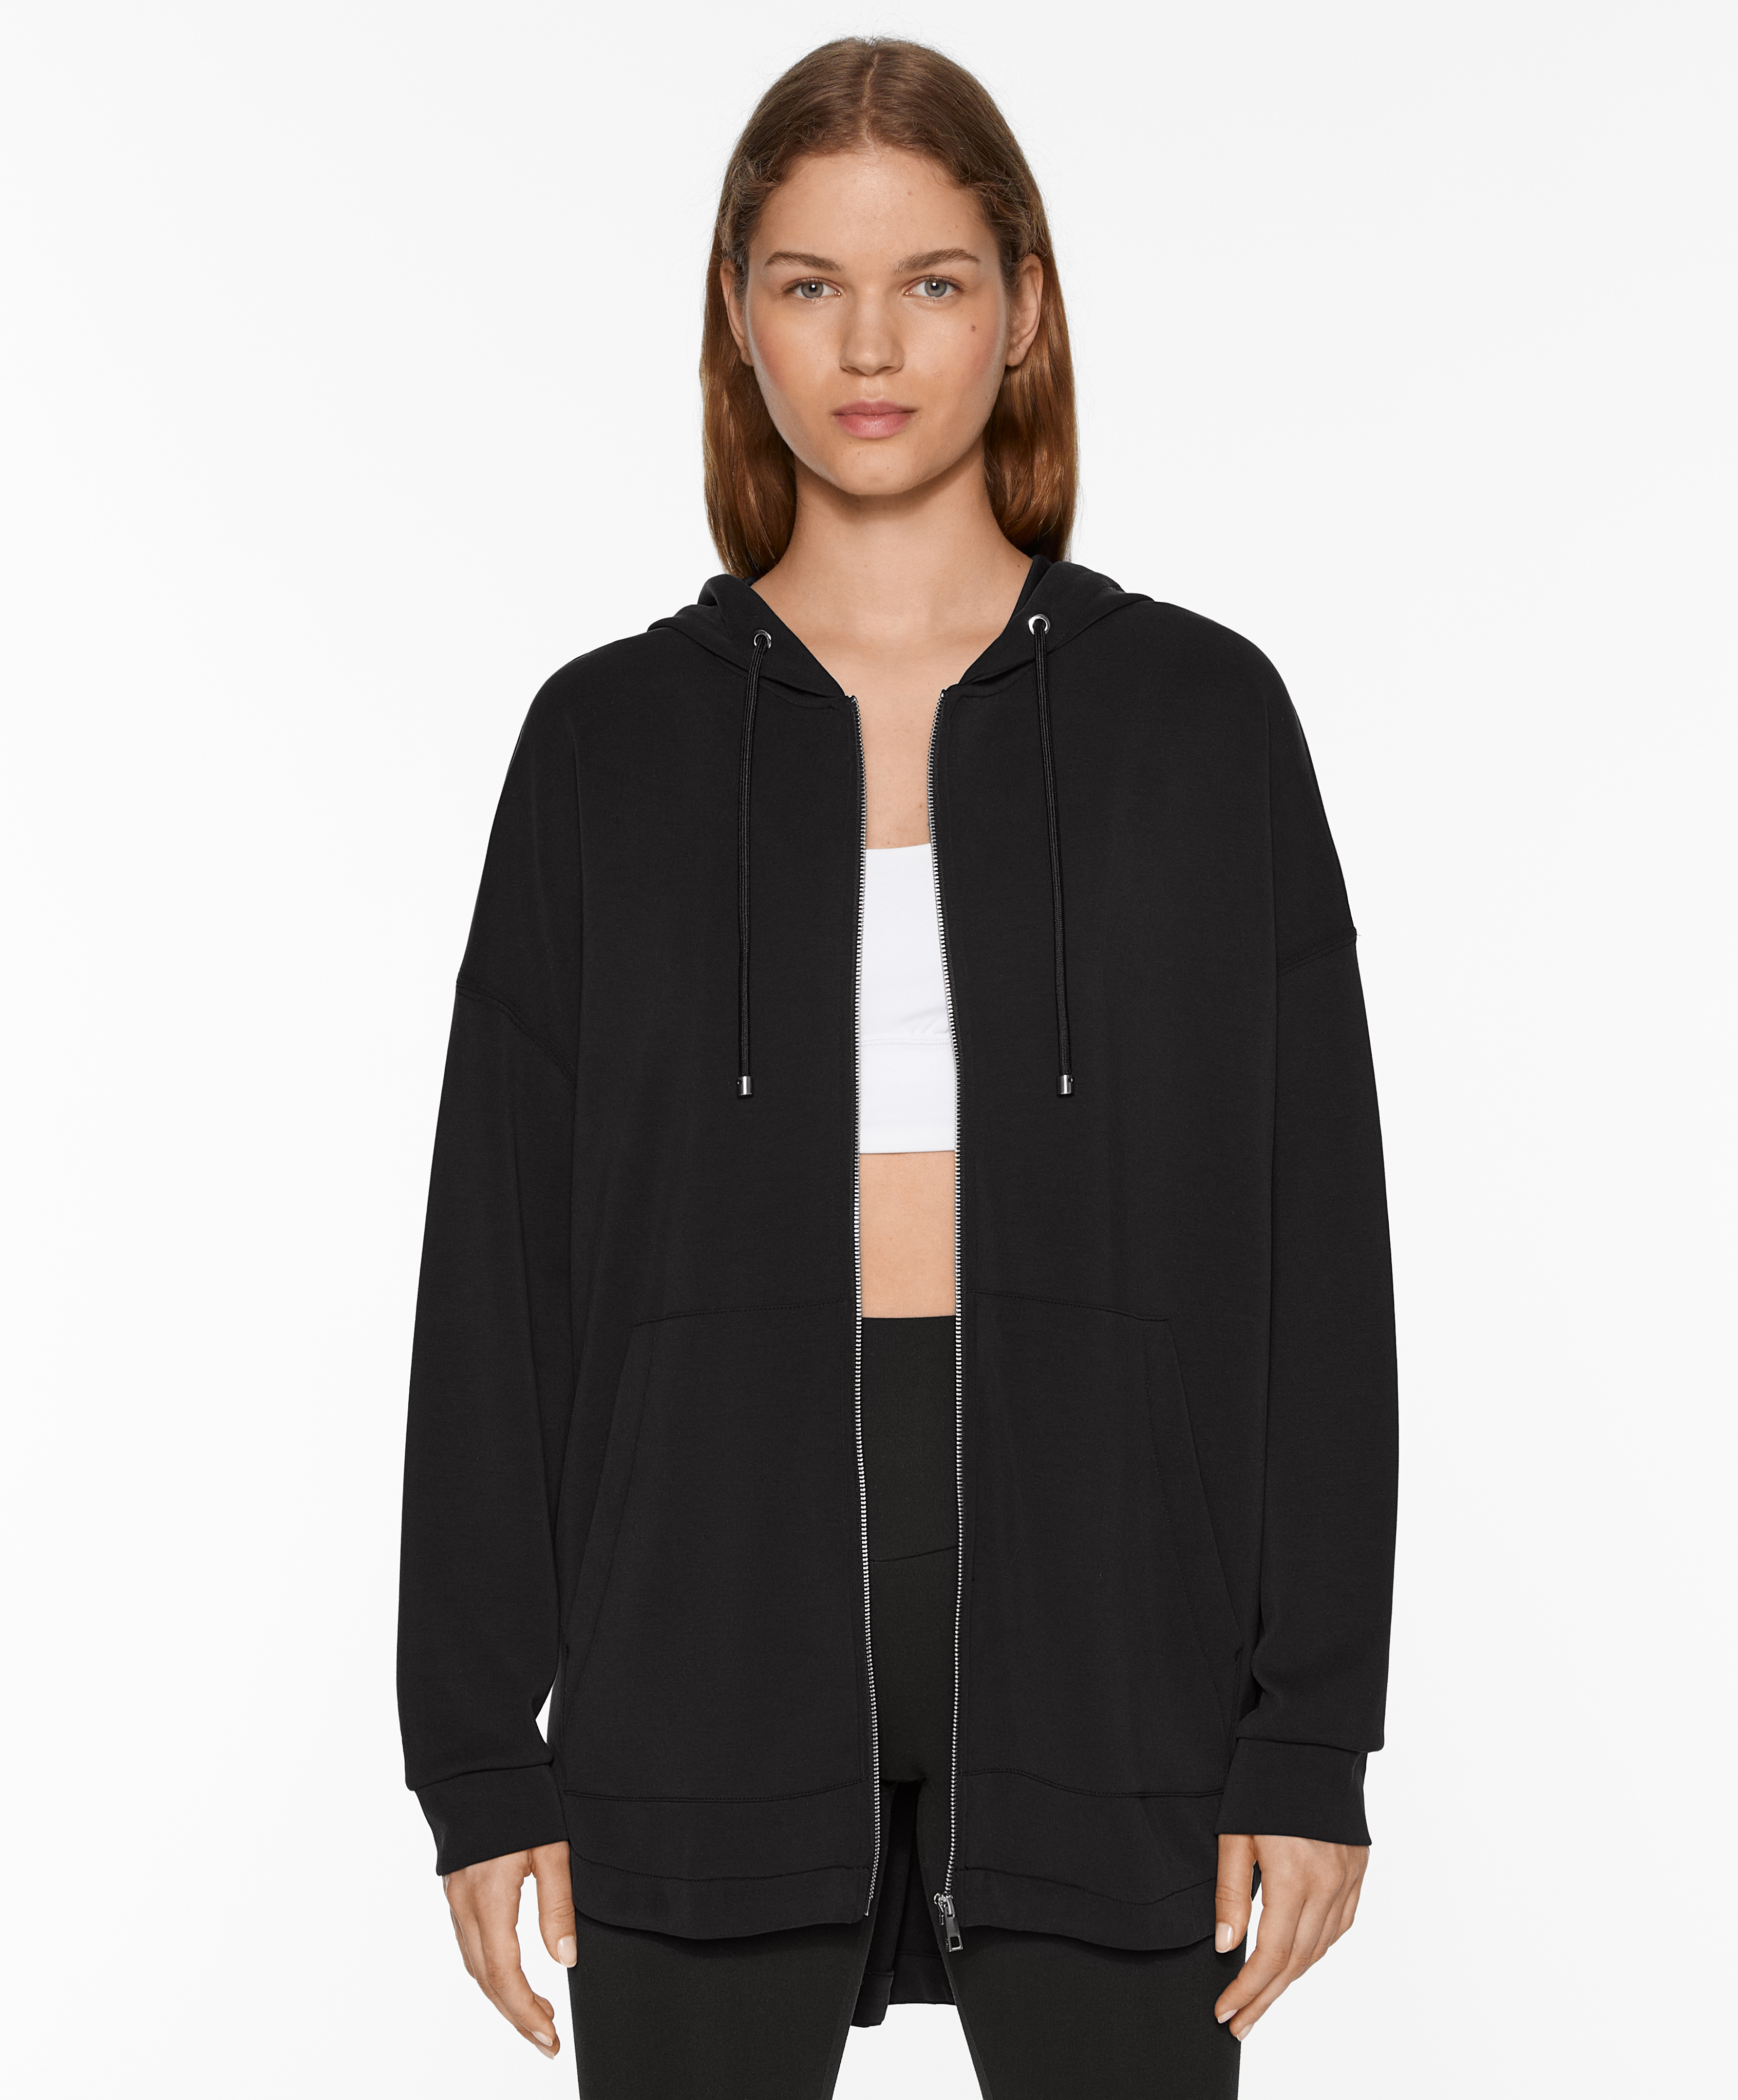 Oversize jacket with modal